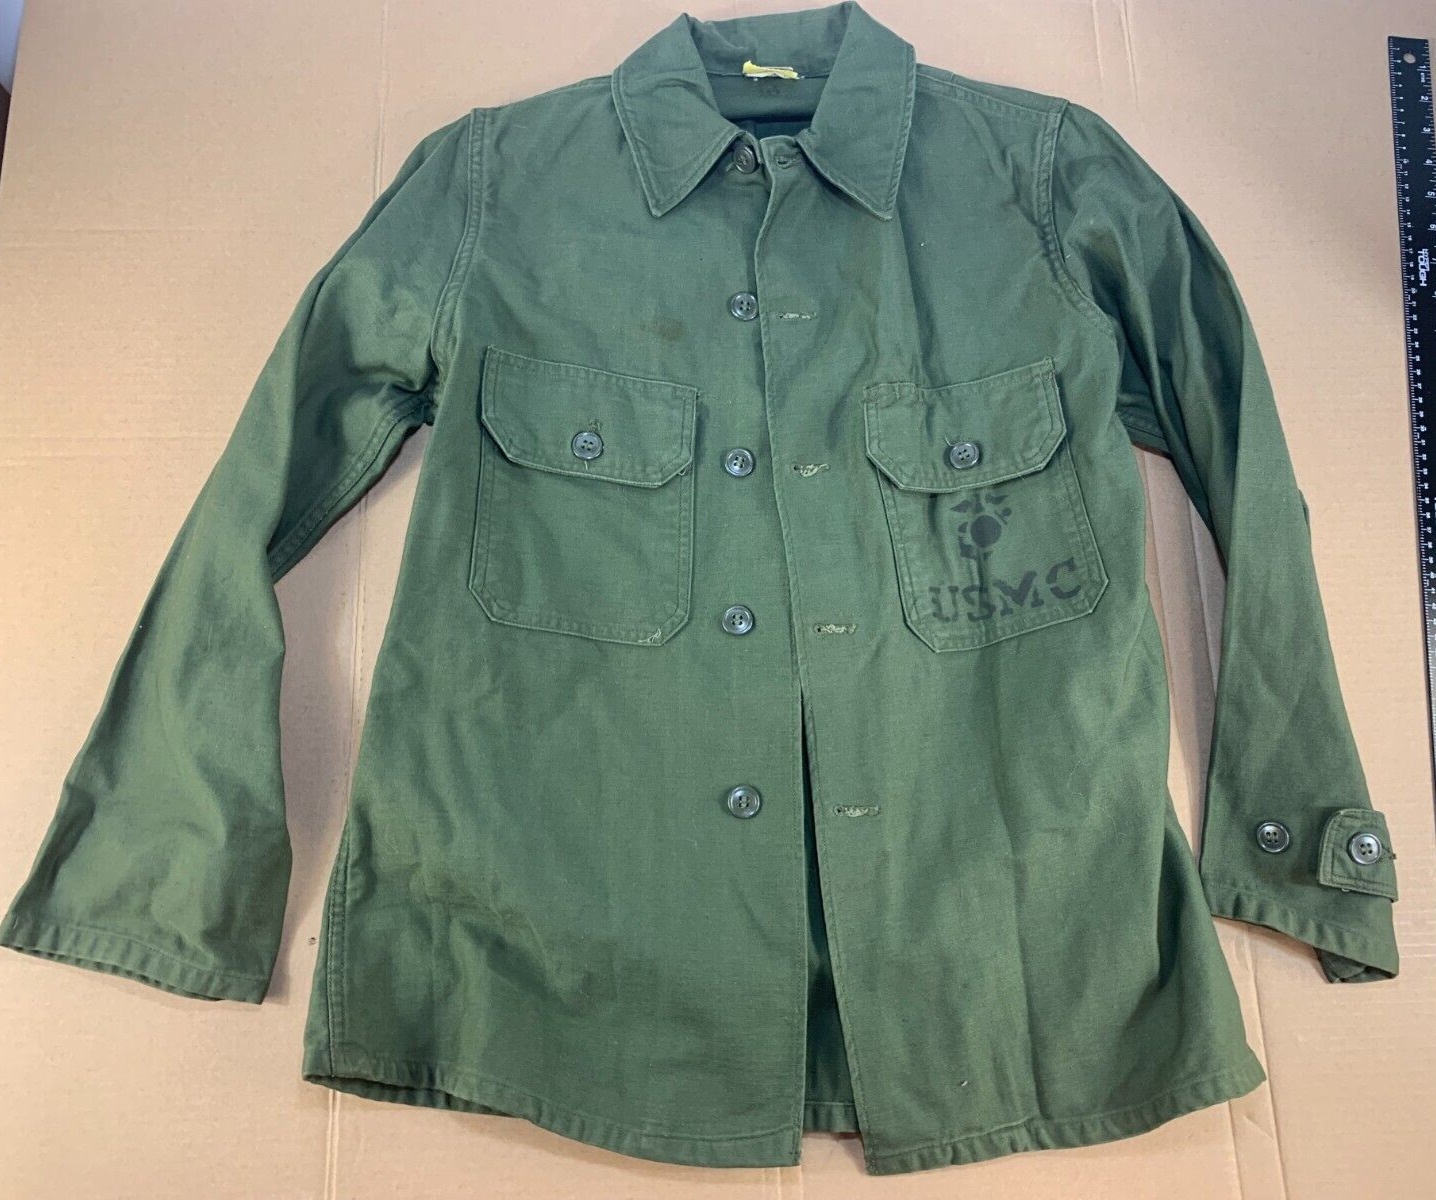 Vintage Minty New NOS Vietnam War 60s 70s USMC Field Uniform Shirt Jacket Marine